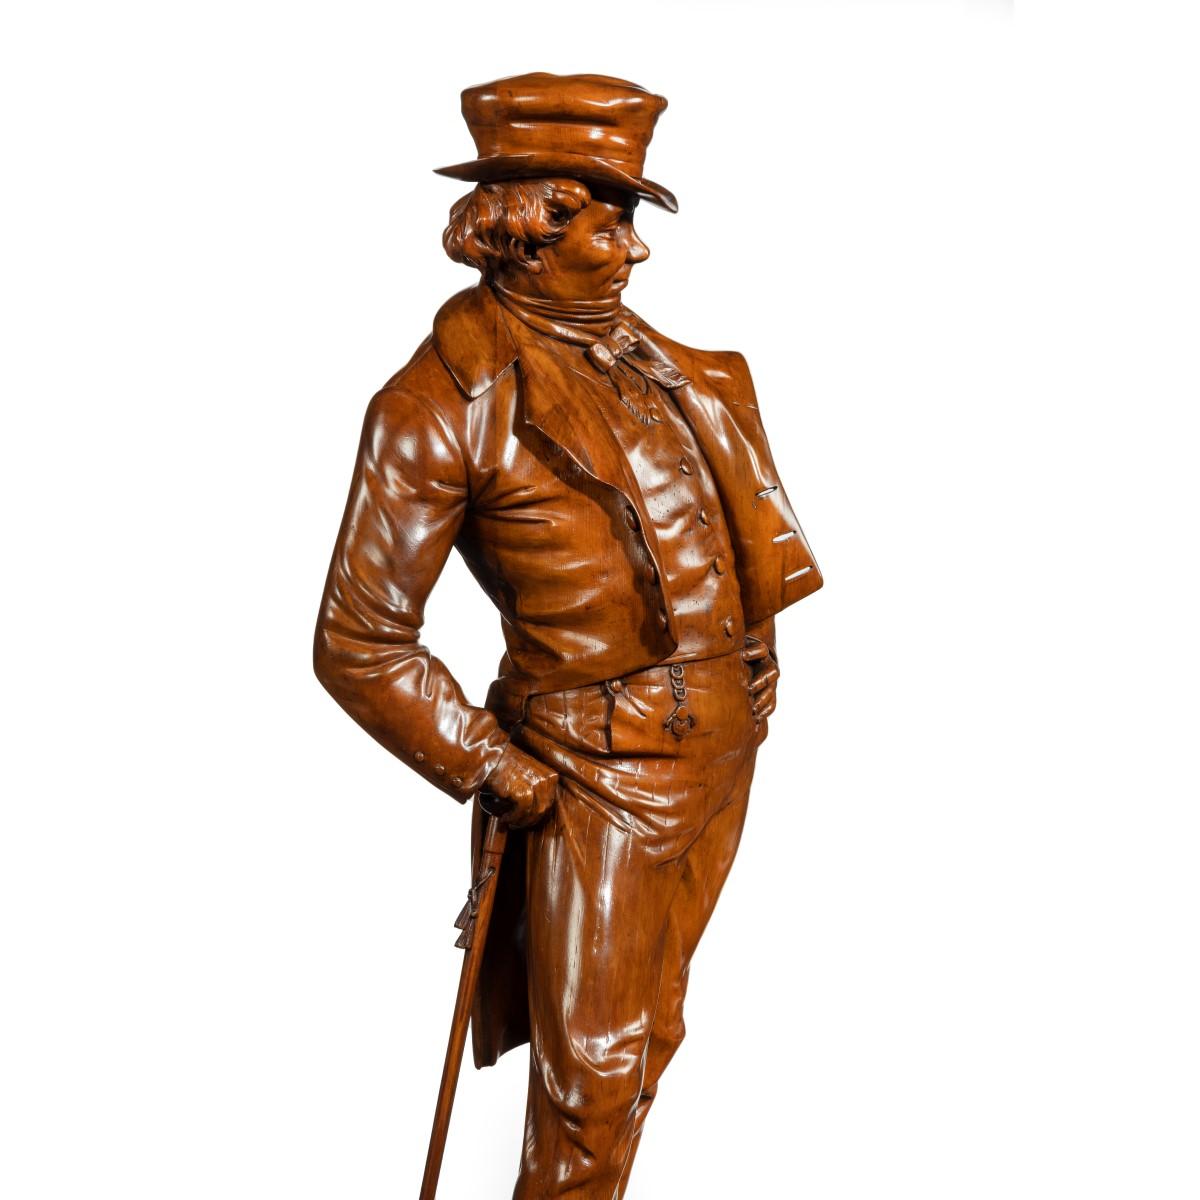 Figure victorienne en noyer sculpté d'un gentleman à la mode, portant un chapeau haut de forme, une queue de pie et un gilet boutonné, prenant une pose nonchalante avec une main sur la hanche, se soutenant sur sa canne à glands, le tout reposant sur